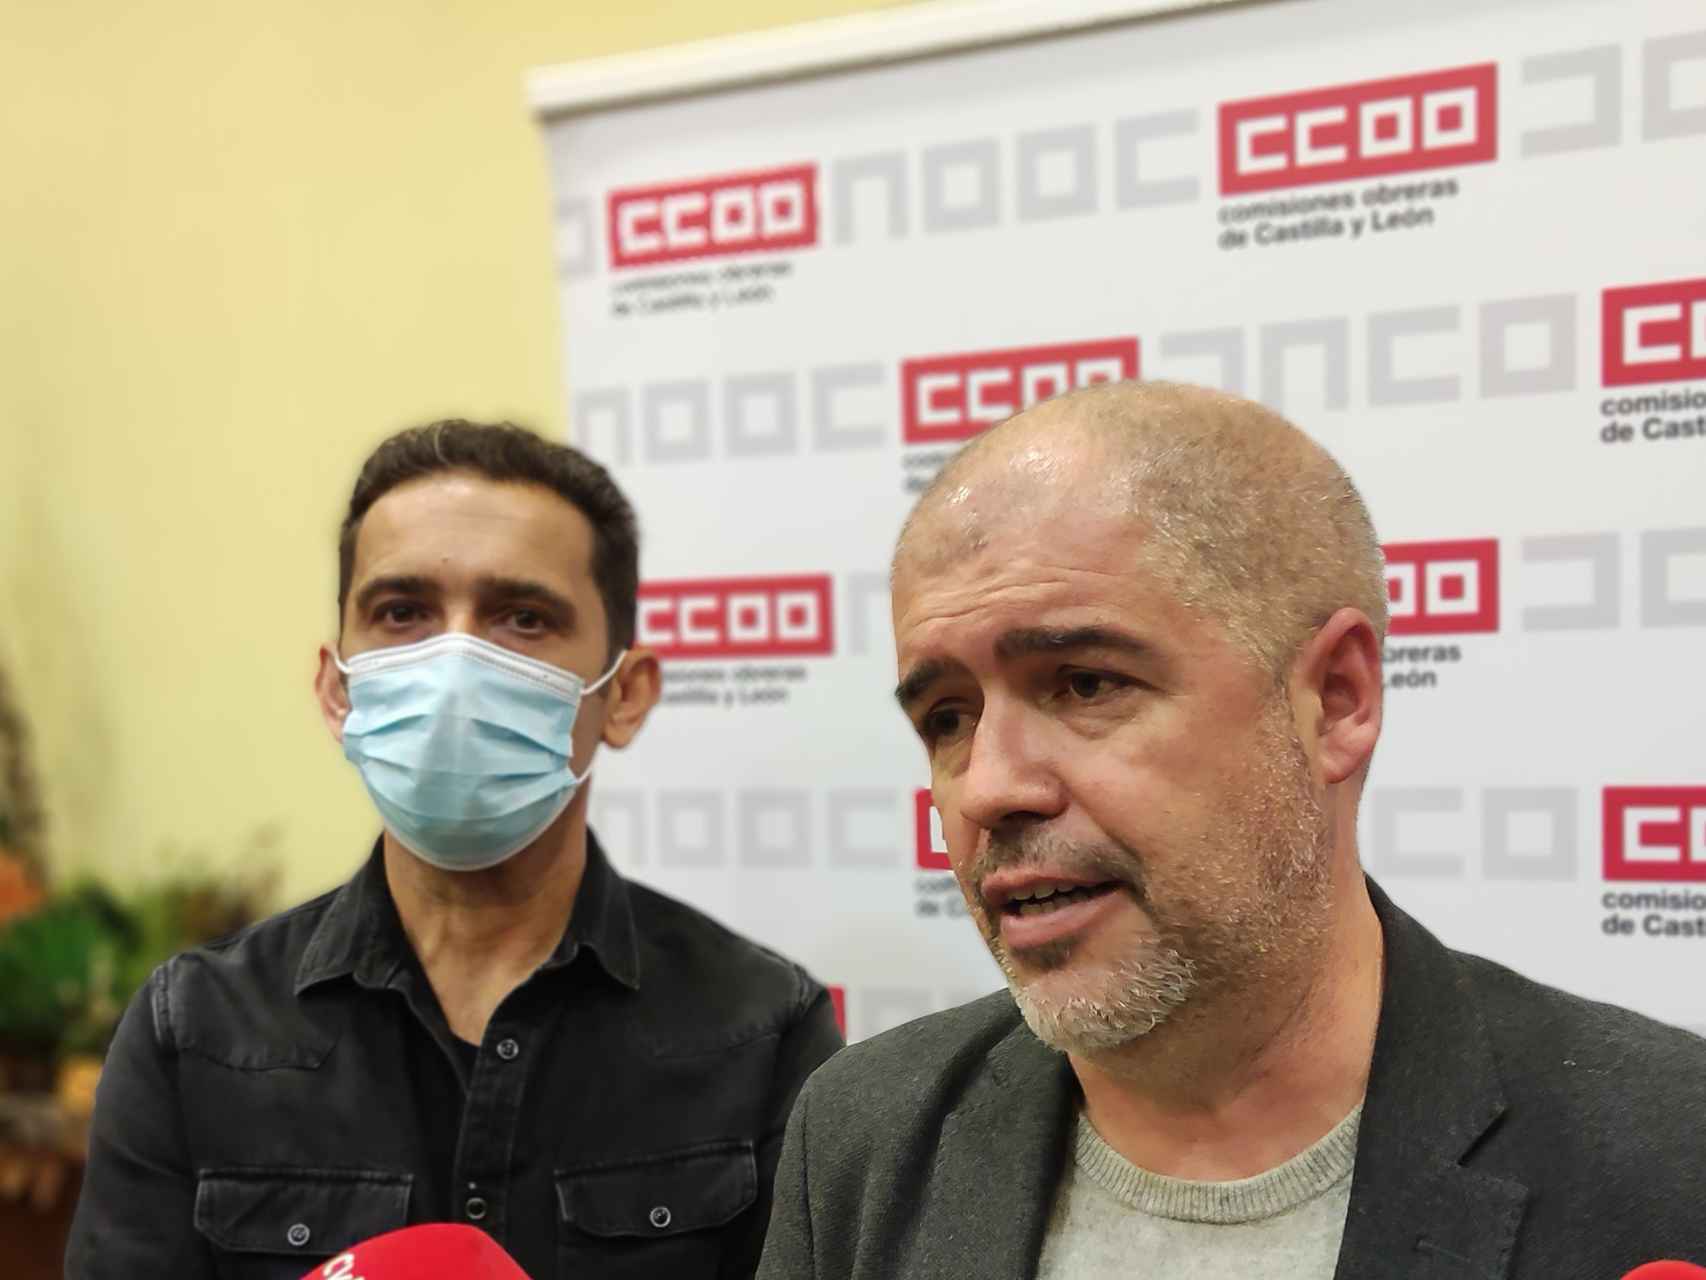 El secretario general de CCOO, Unai Sordo, y el dirigente autonómico del sindicato, Vicente Andrés, en una imagen de archivo. / ICAL